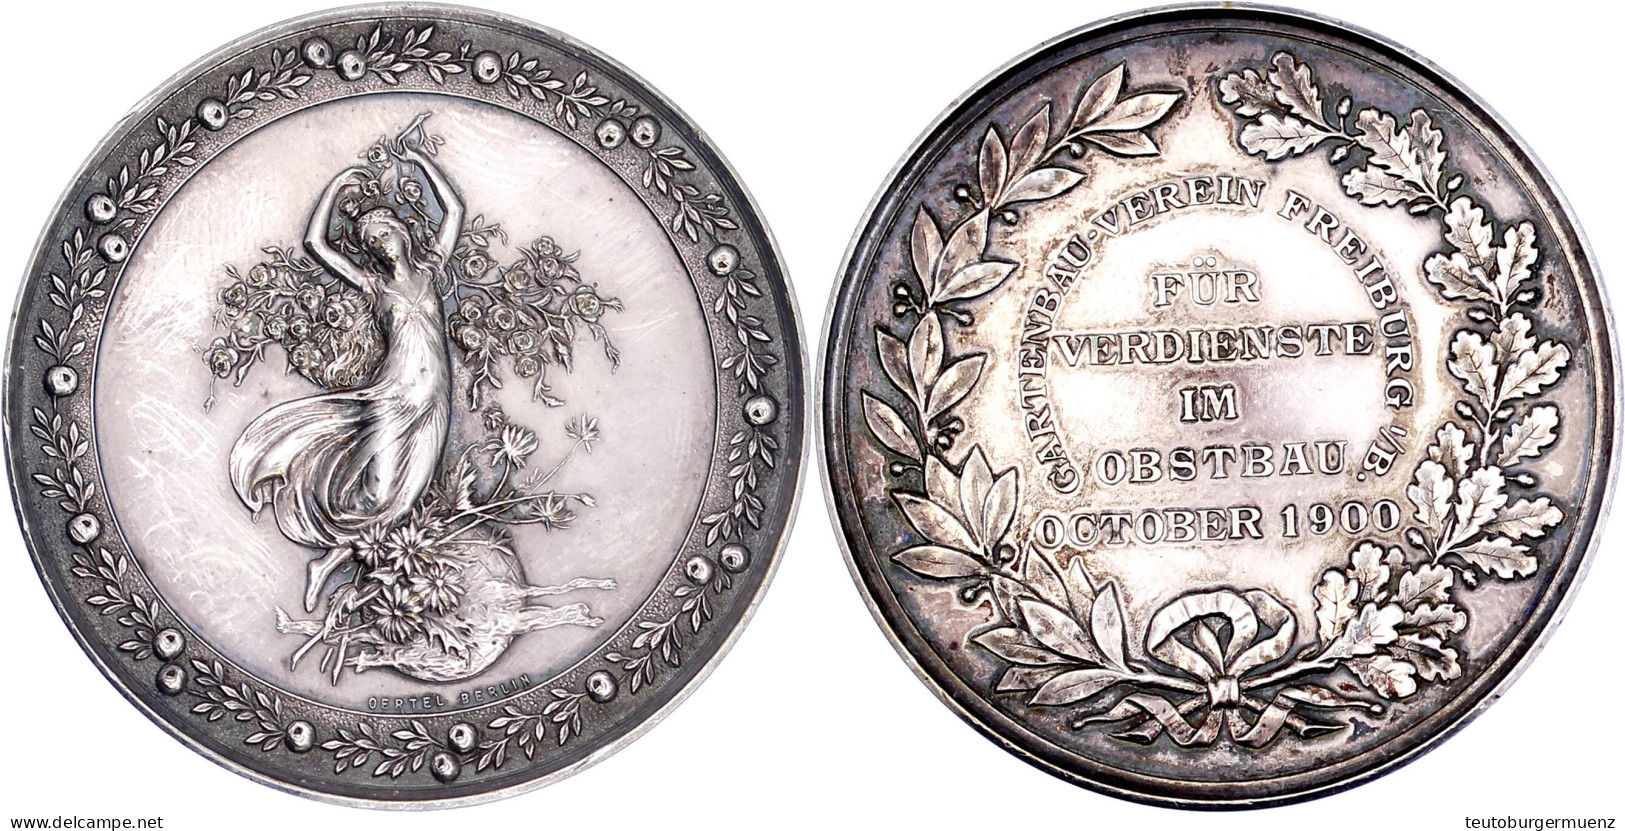 Silbermedaille Des Gartenbau-Vereins Freiburg I.B. 1900, Für Verdienste Im Obstbau Oktober 1900. Fortuna Auf Blumenkorb, - Pièces De Monnaie D'or